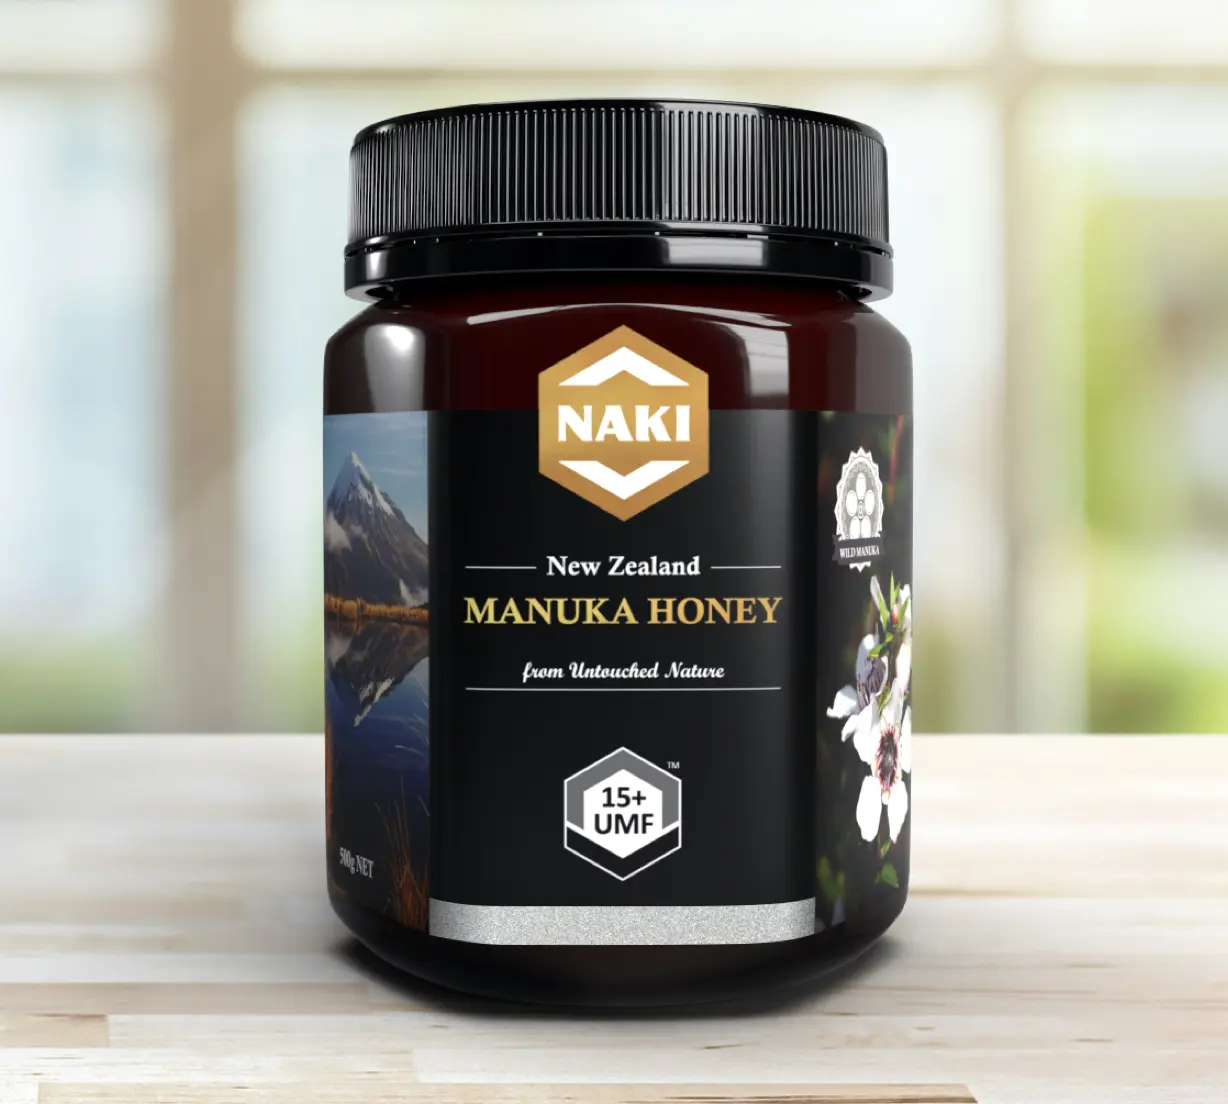 Naki Manuka Honey UMF 15+